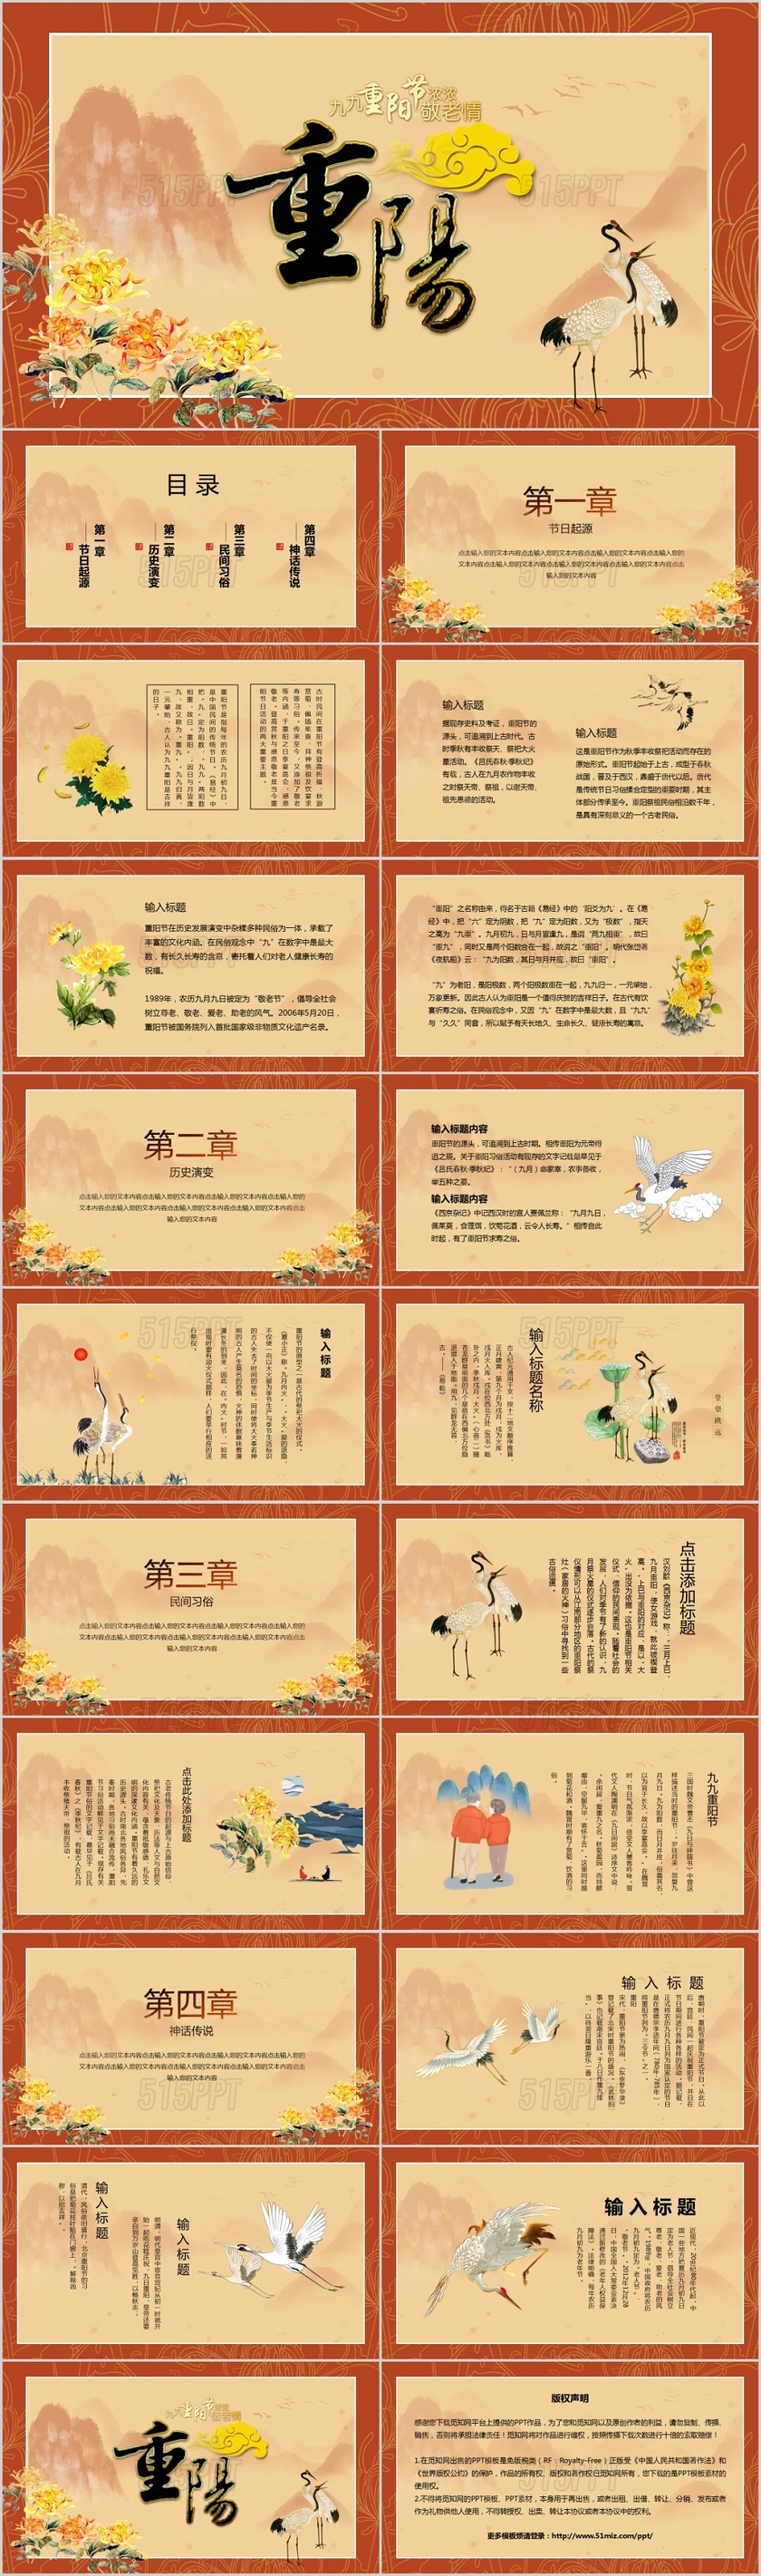 橘黄色重阳佳节中国风手绘主题PPT模板